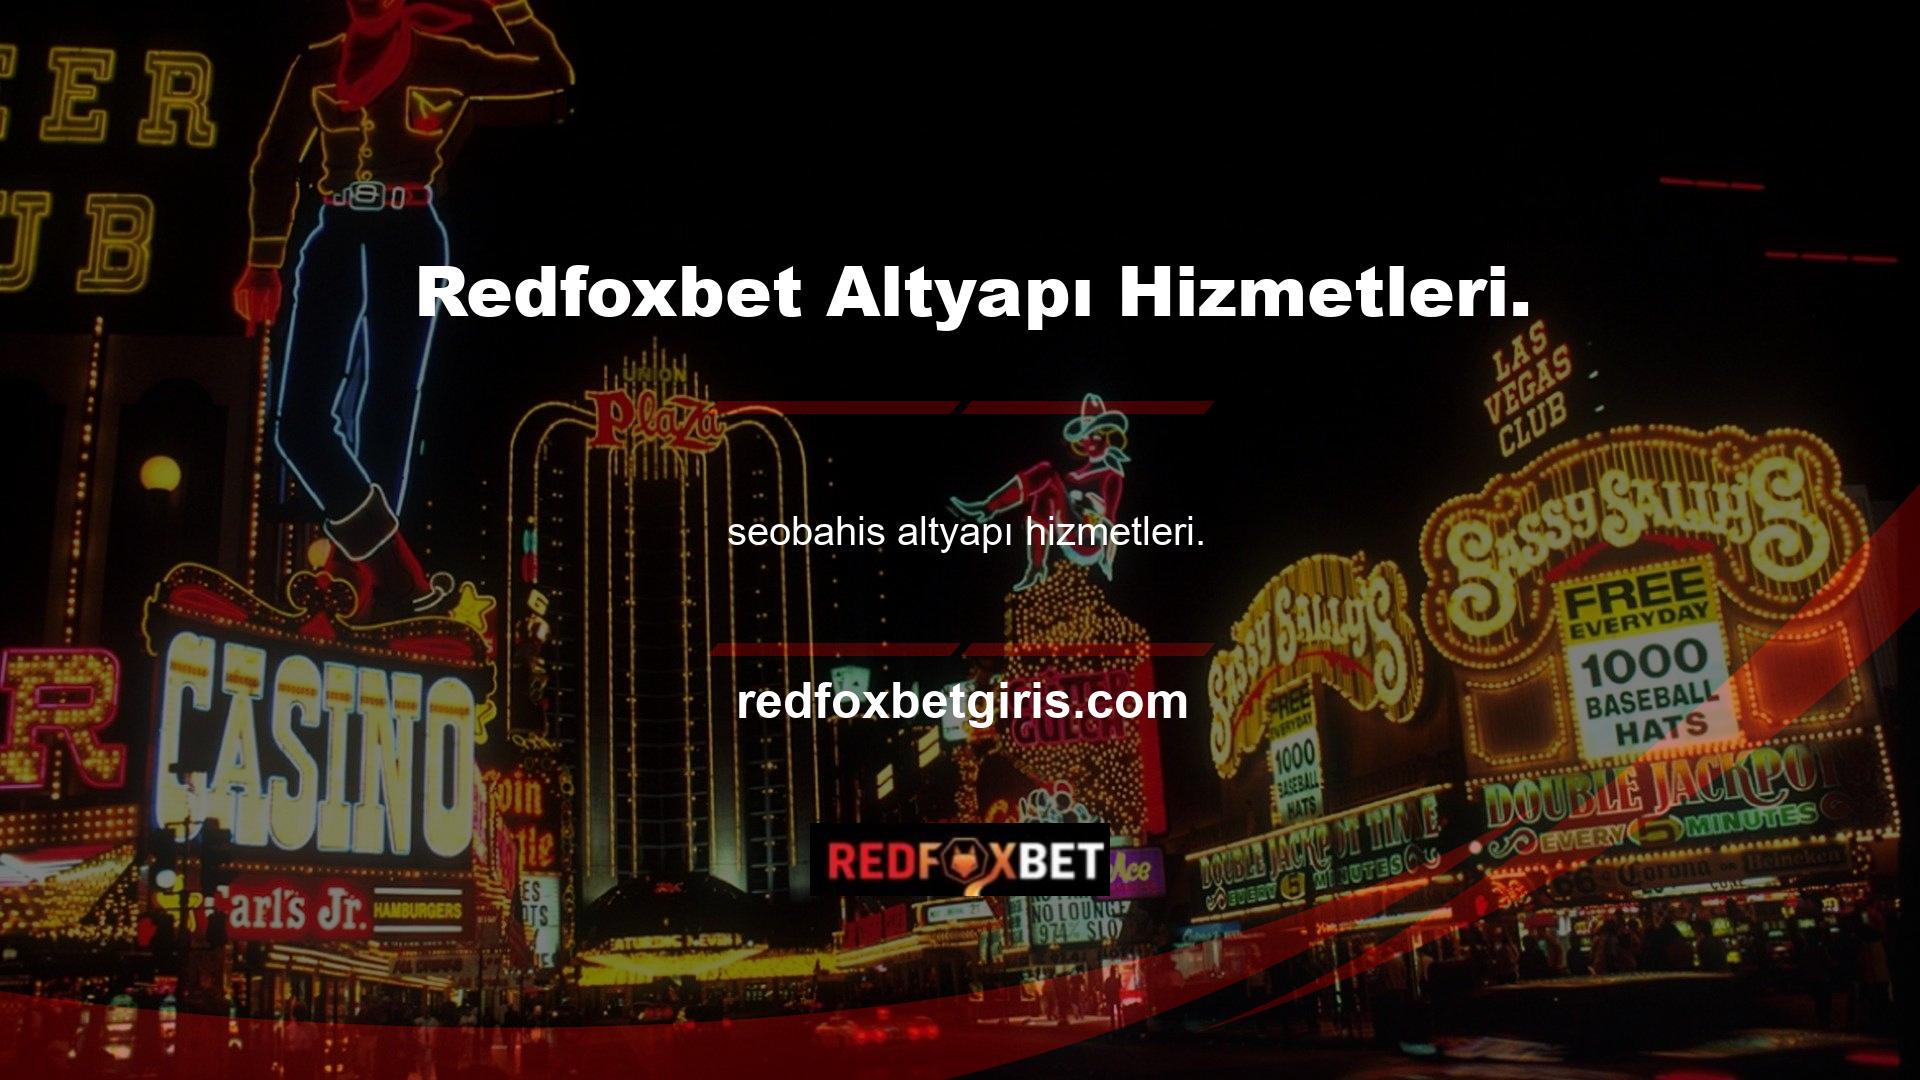 bahis şirketi Redfoxbet, yalnızca nitelikli altyapı hizmetleri sağlama konusundaki kararlılığıyla tanınmaktadır